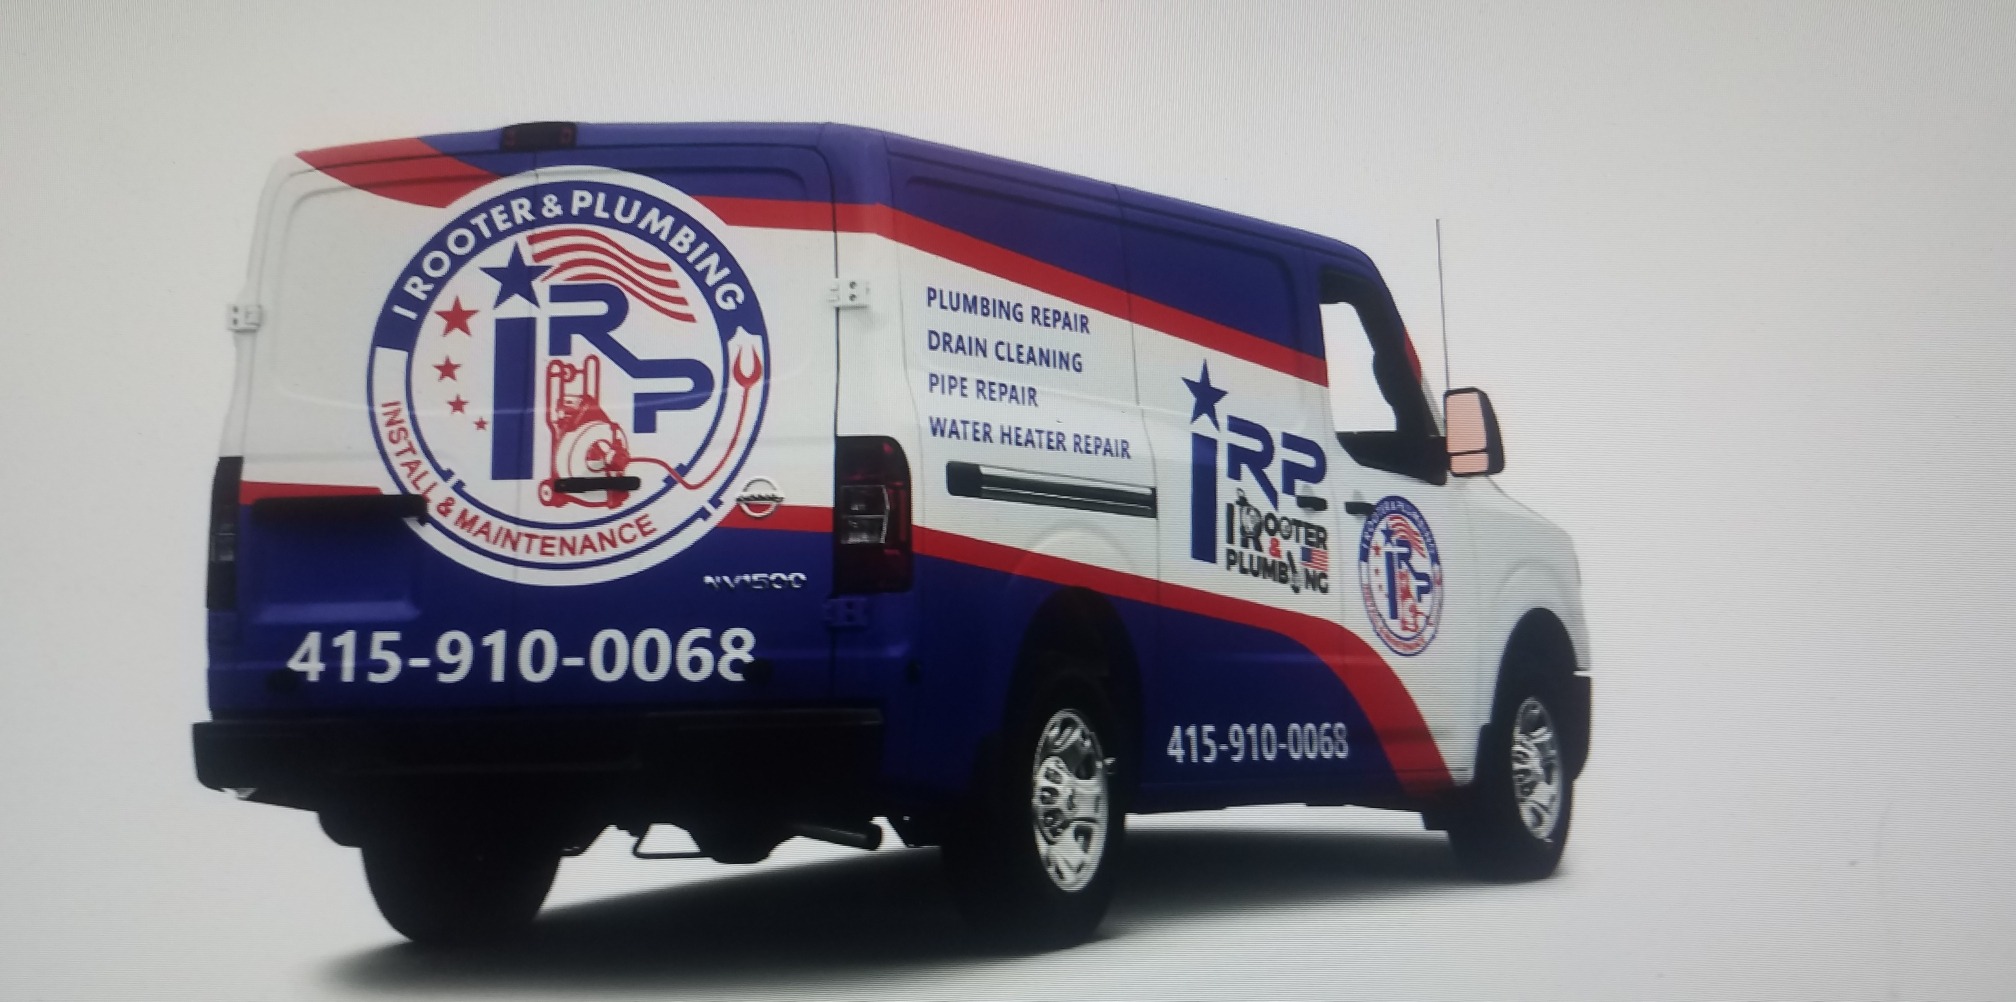 I Rooter & Plumbing Service Van